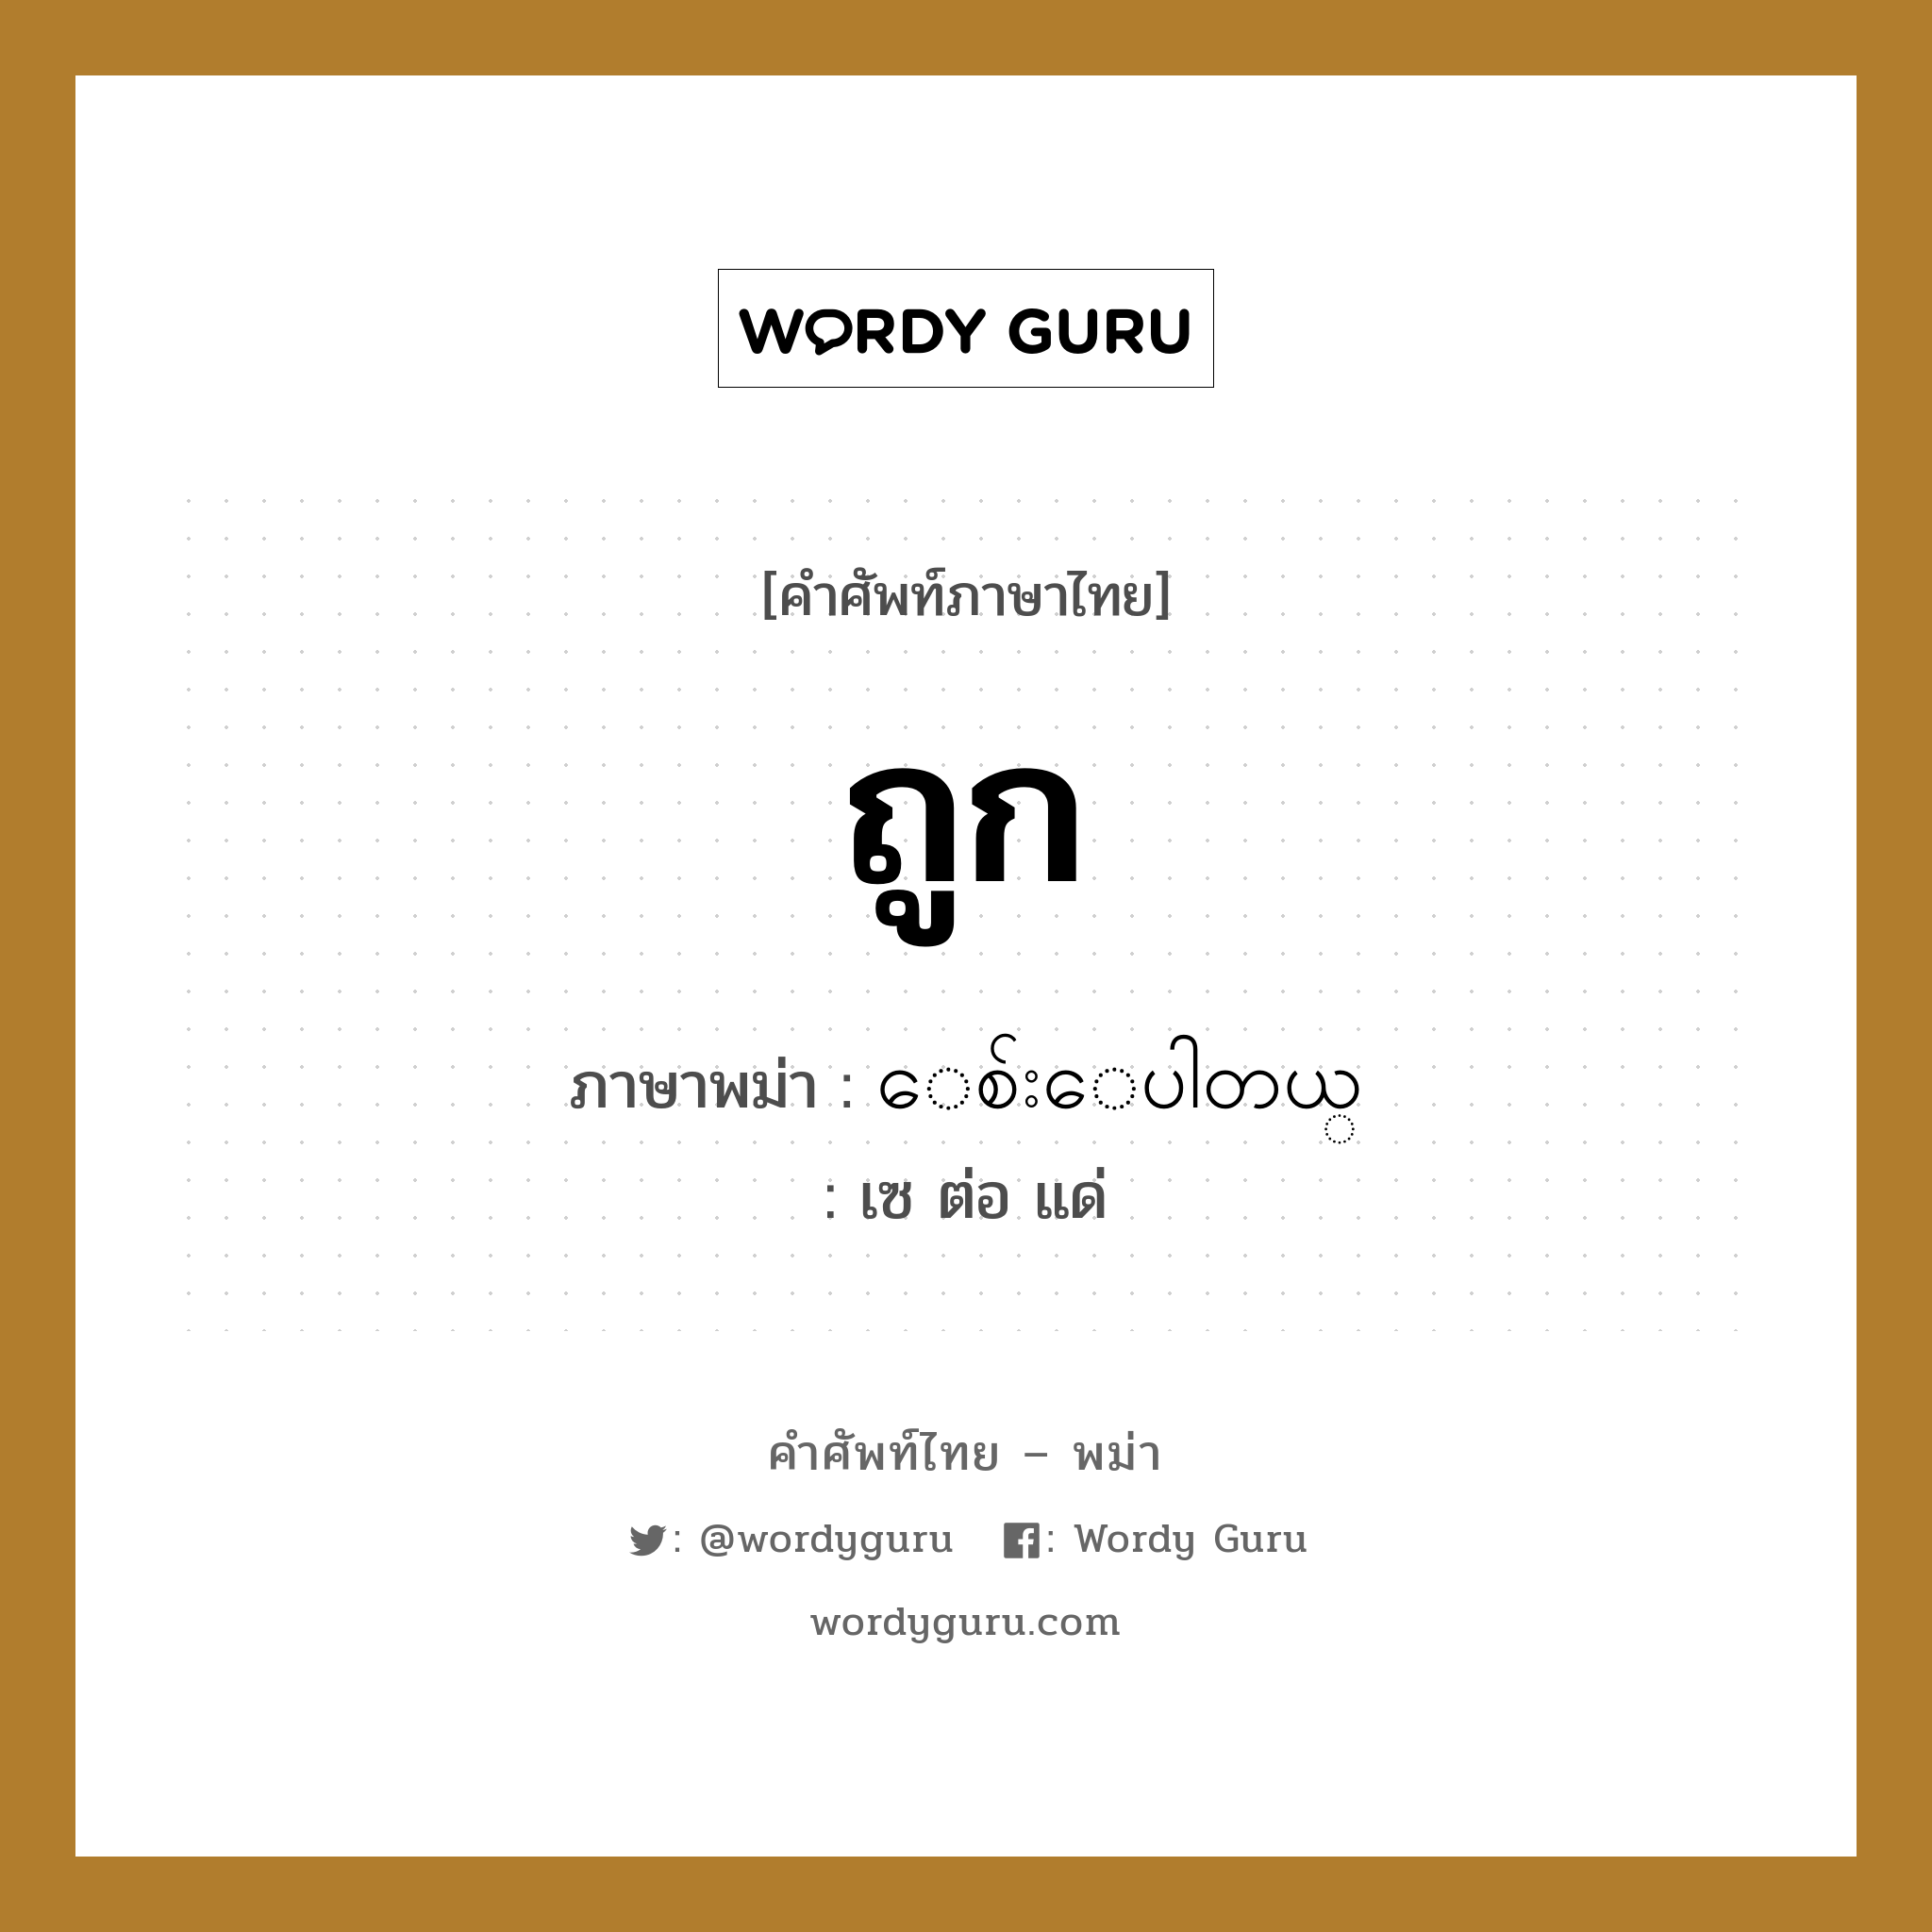 ถูก ภาษาพม่าคืออะไร, คำศัพท์ภาษาไทย - พม่า ถูก ภาษาพม่า ေစ်းေပါတယ္ หมวด บทสนทนาการซื้อขาย เซ ต่อ แด่ หมวด บทสนทนาการซื้อขาย